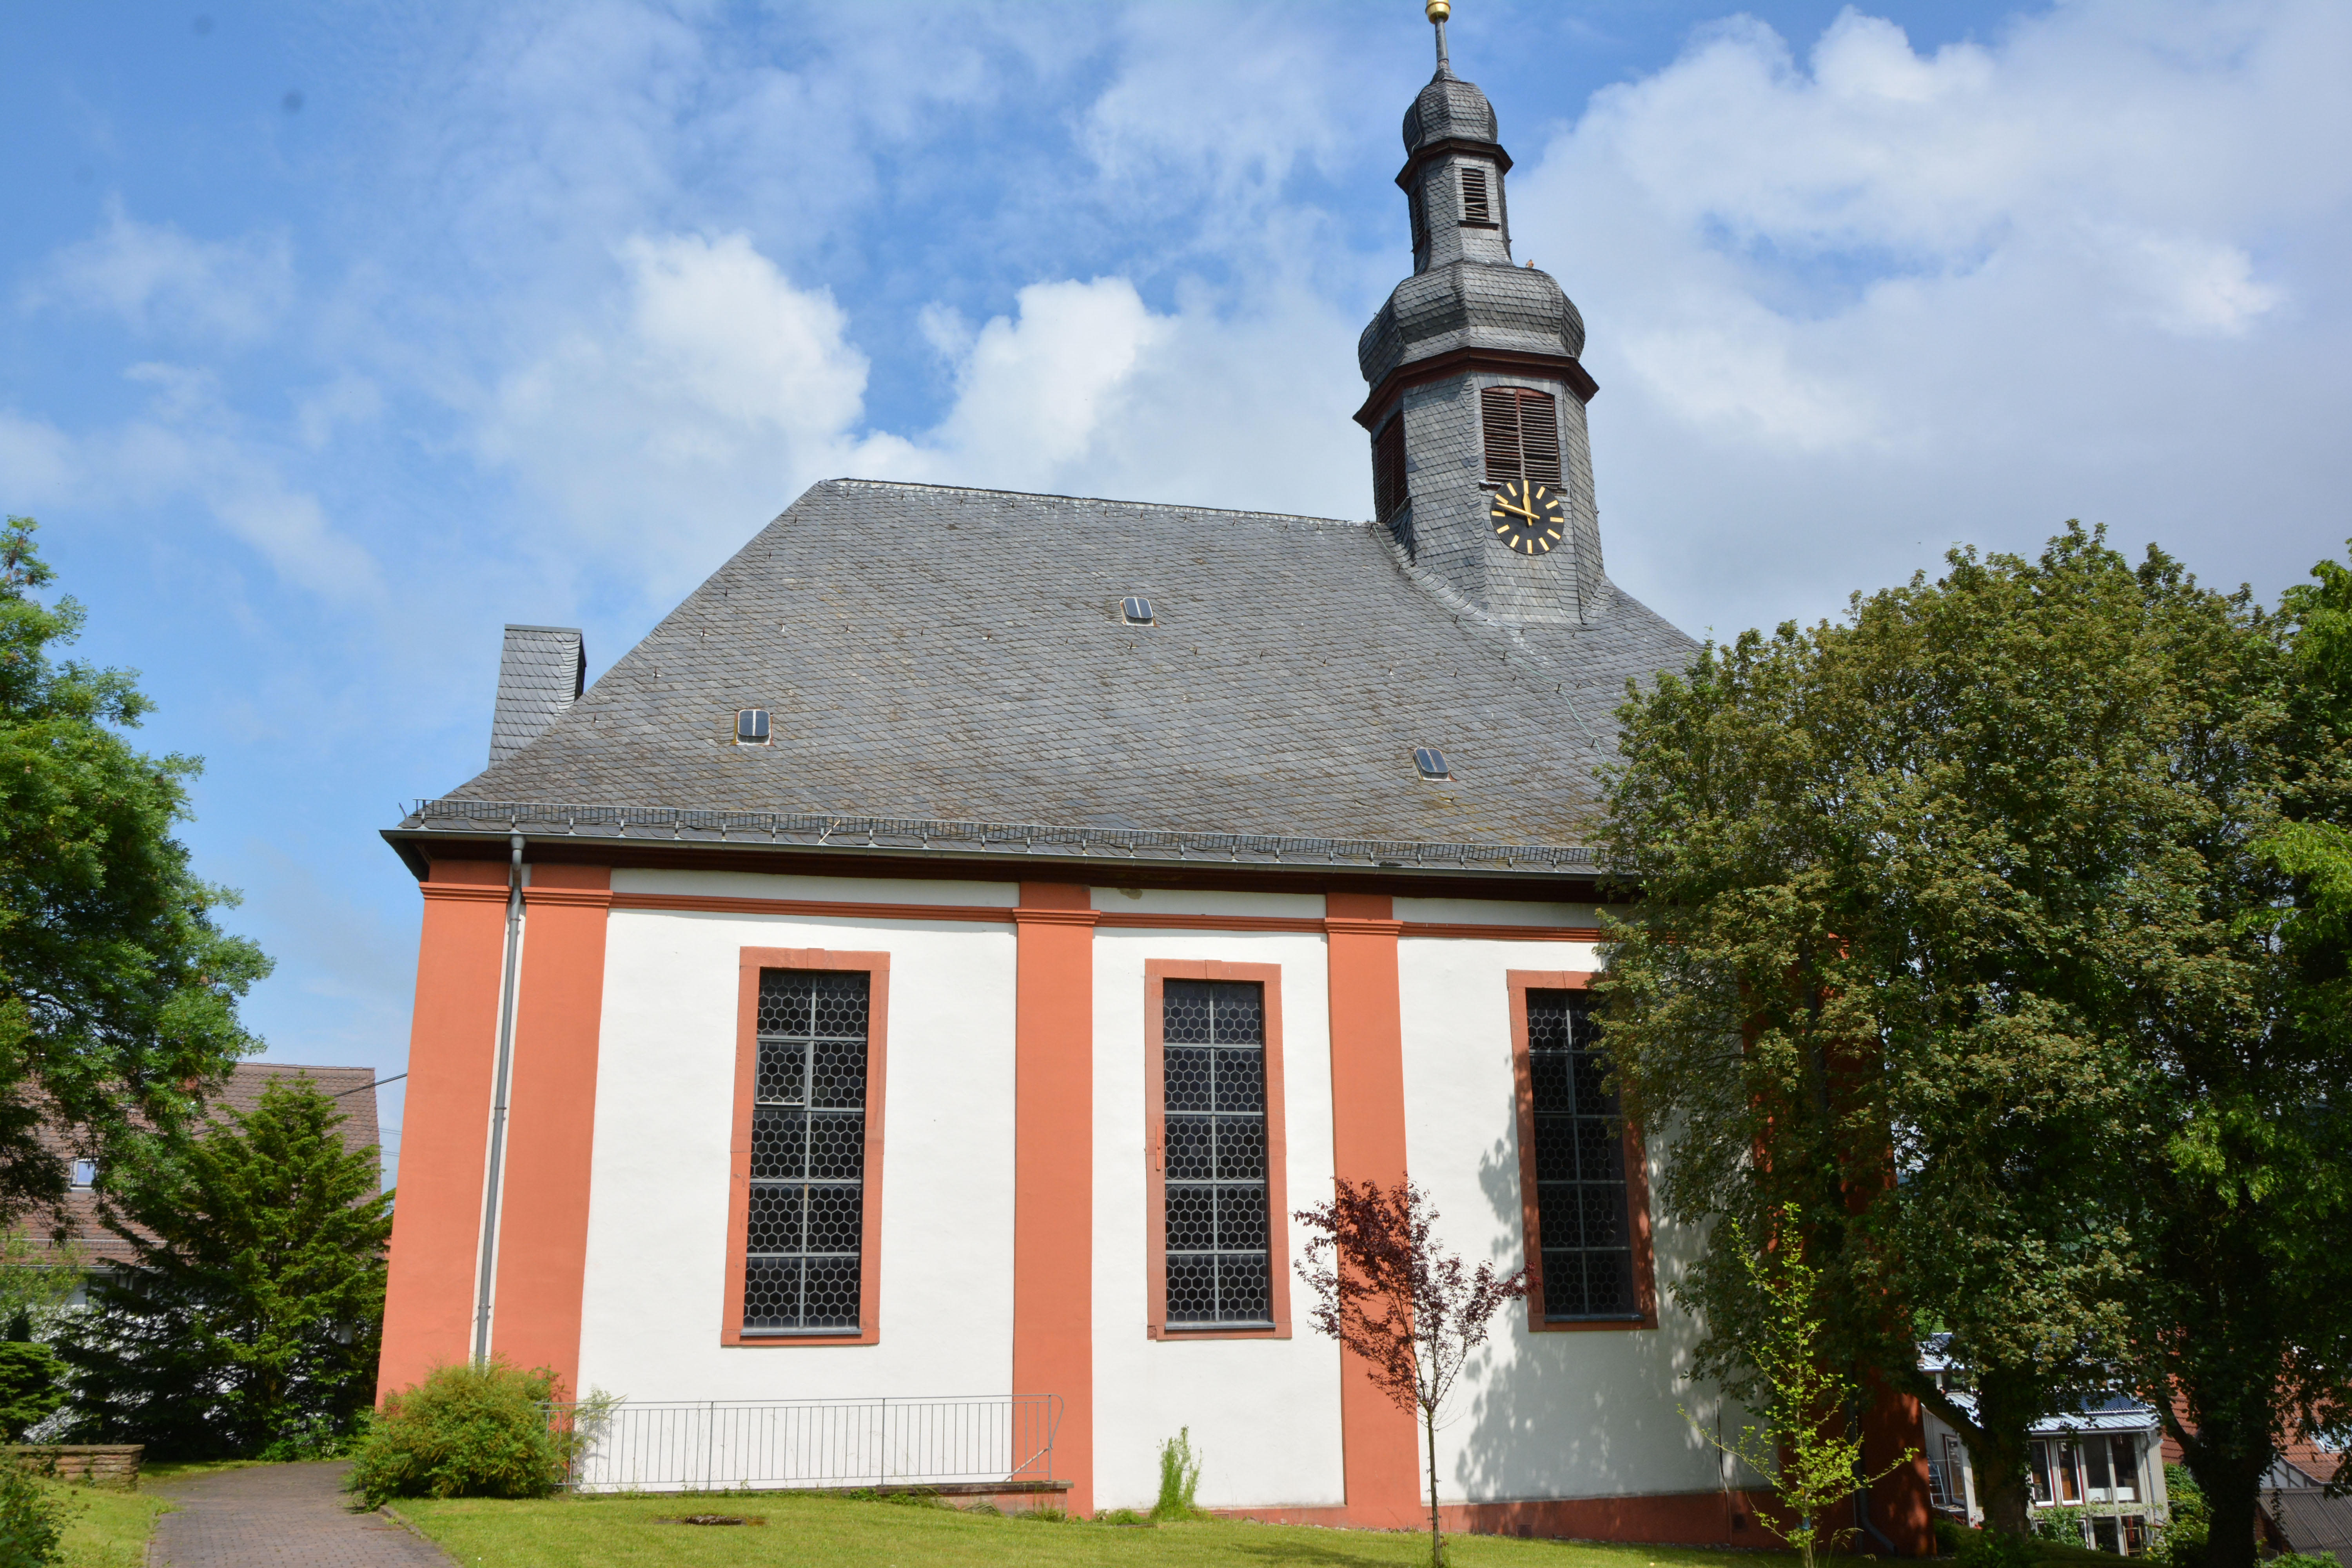 Bild 1 Evangelische Kirche Esch - Evangelische Kirchengemeinde Esch in Waldems